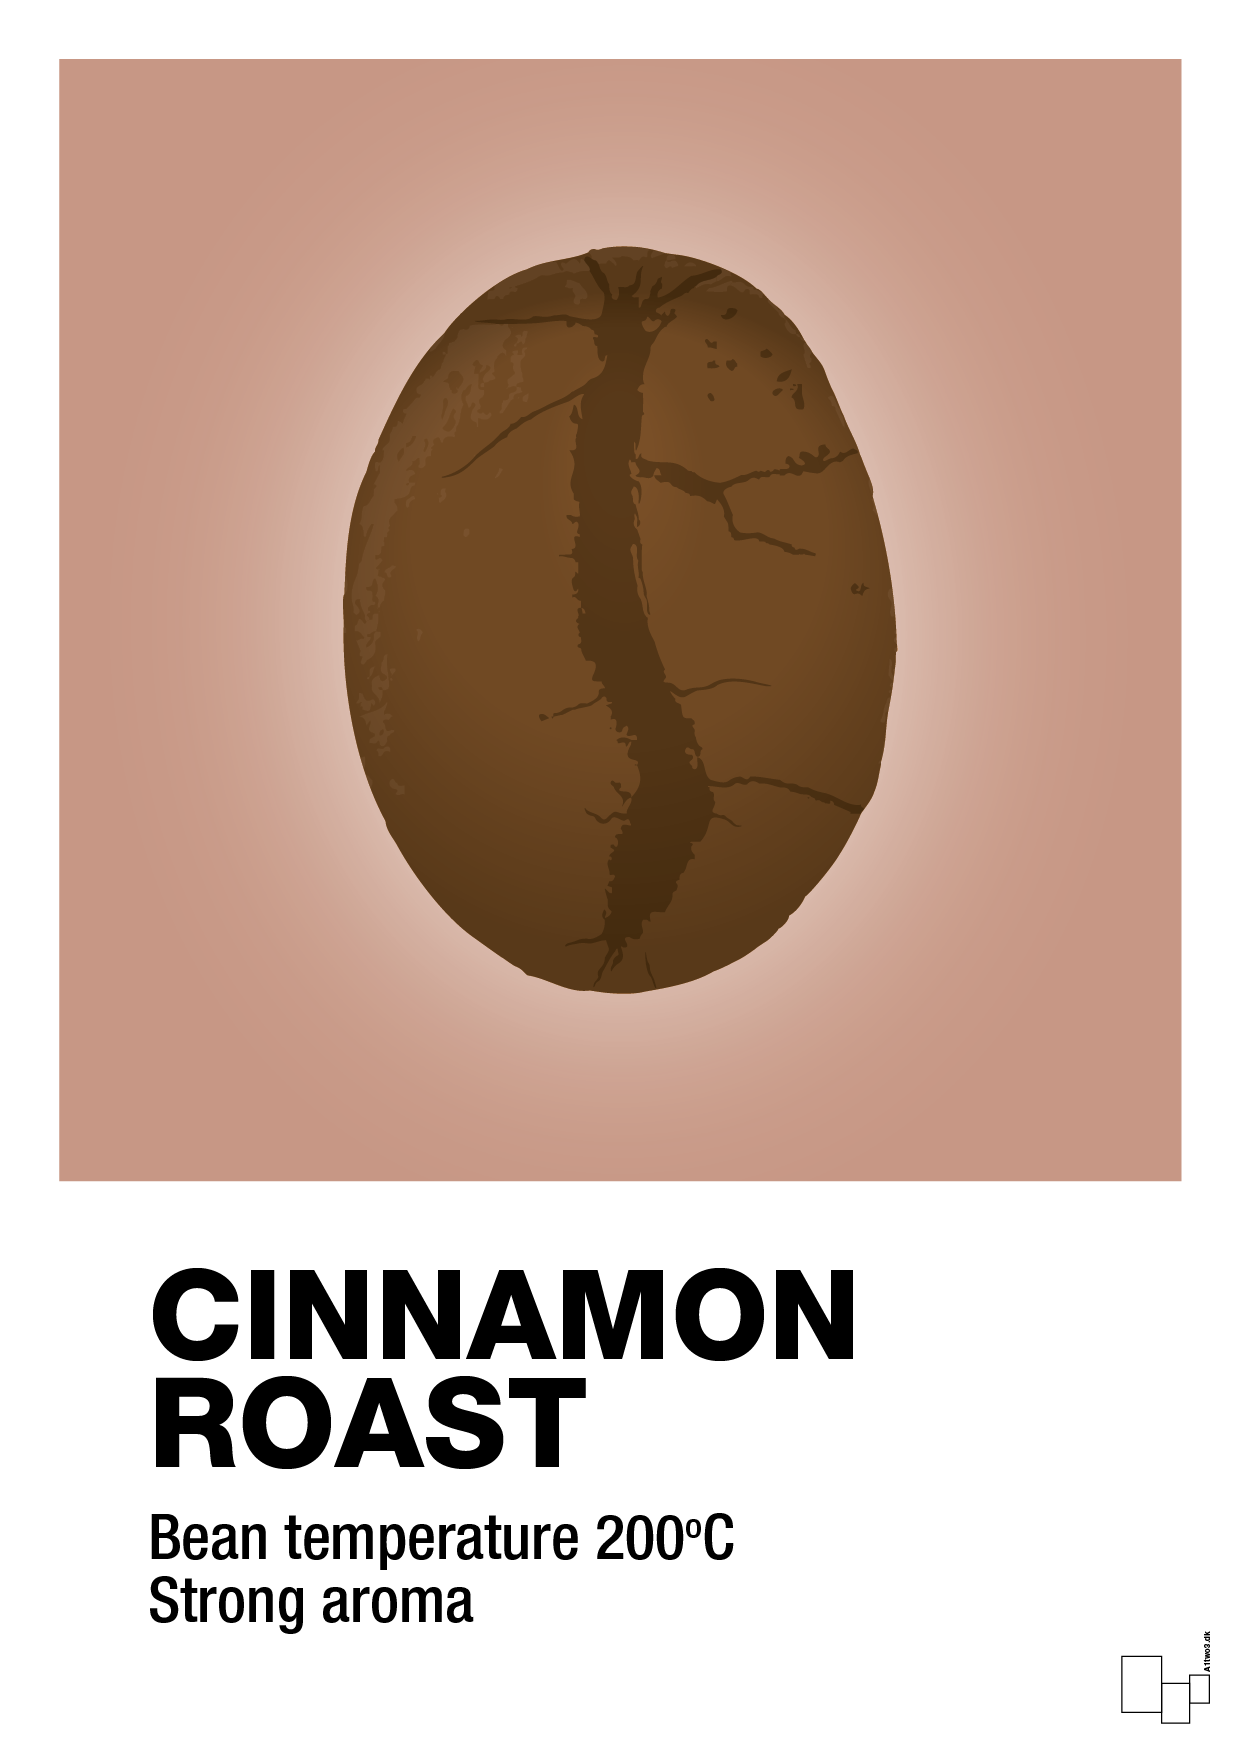 cinnamom roast - Plakat med Mad & Drikke i Powder